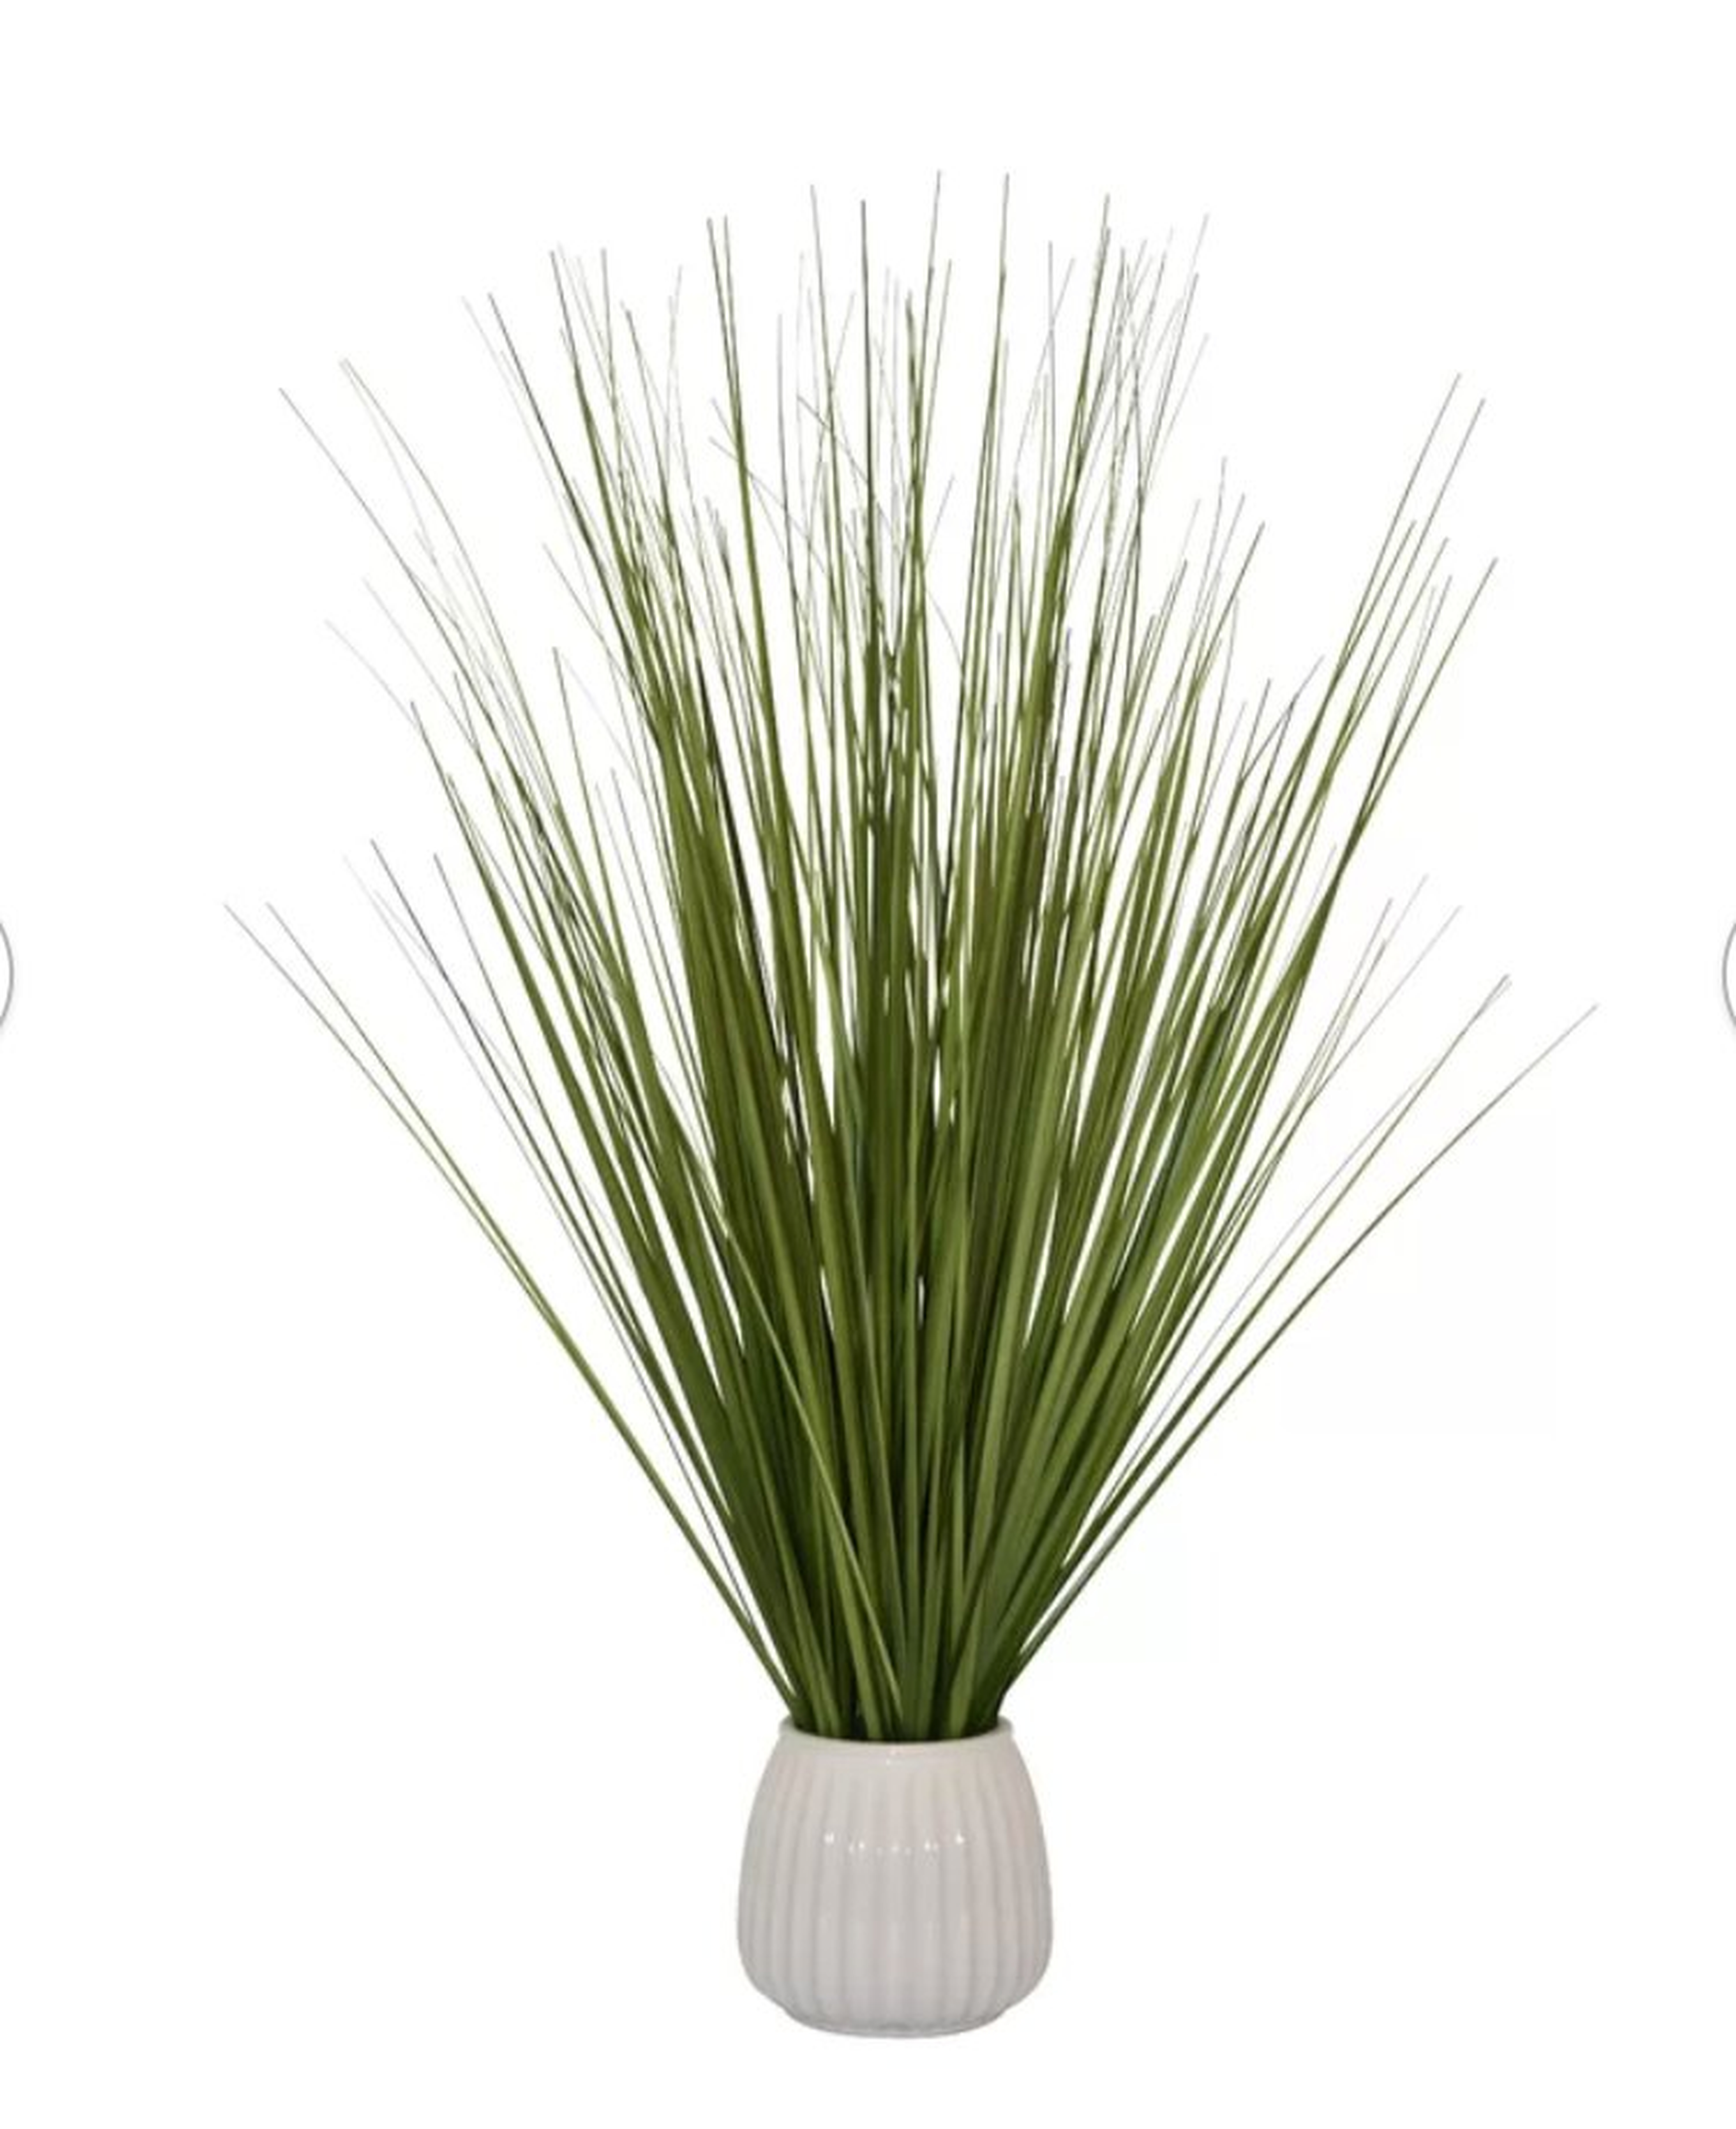 25.5" Artificial Foliage Grass in Pot - Wayfair